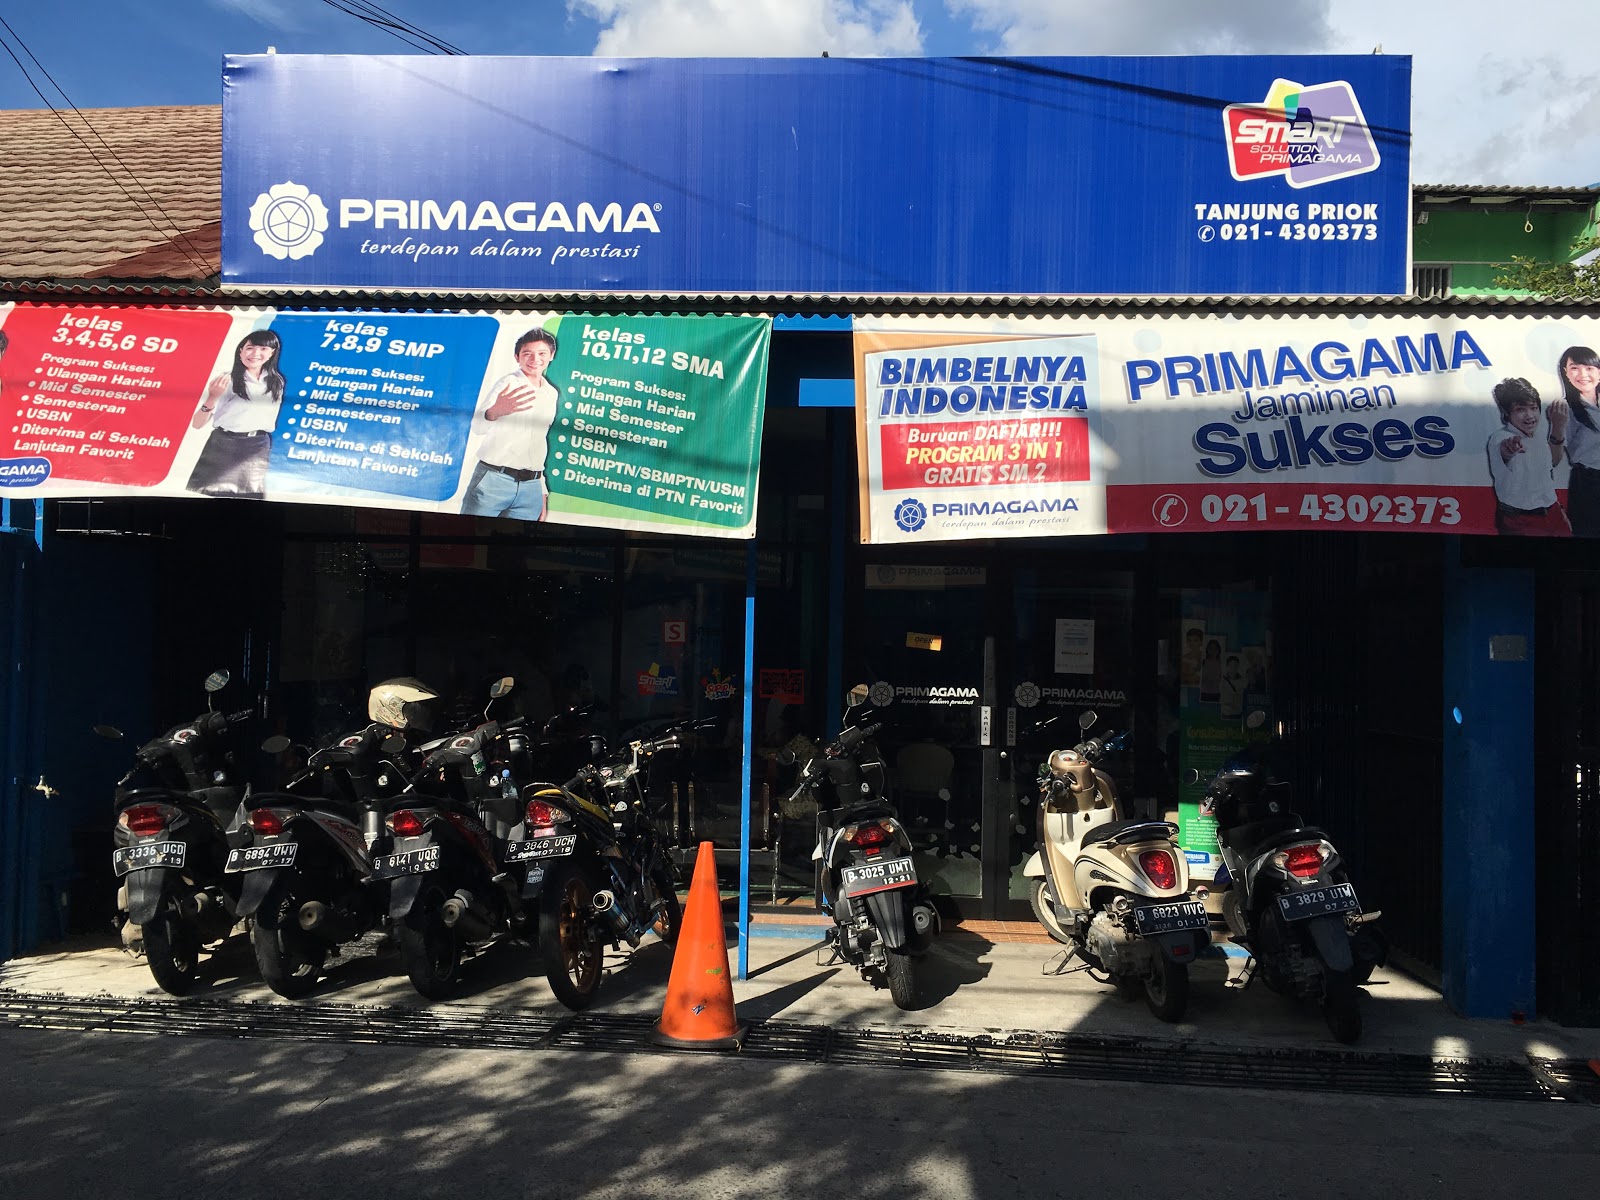 New Primagama Tanjung Priok